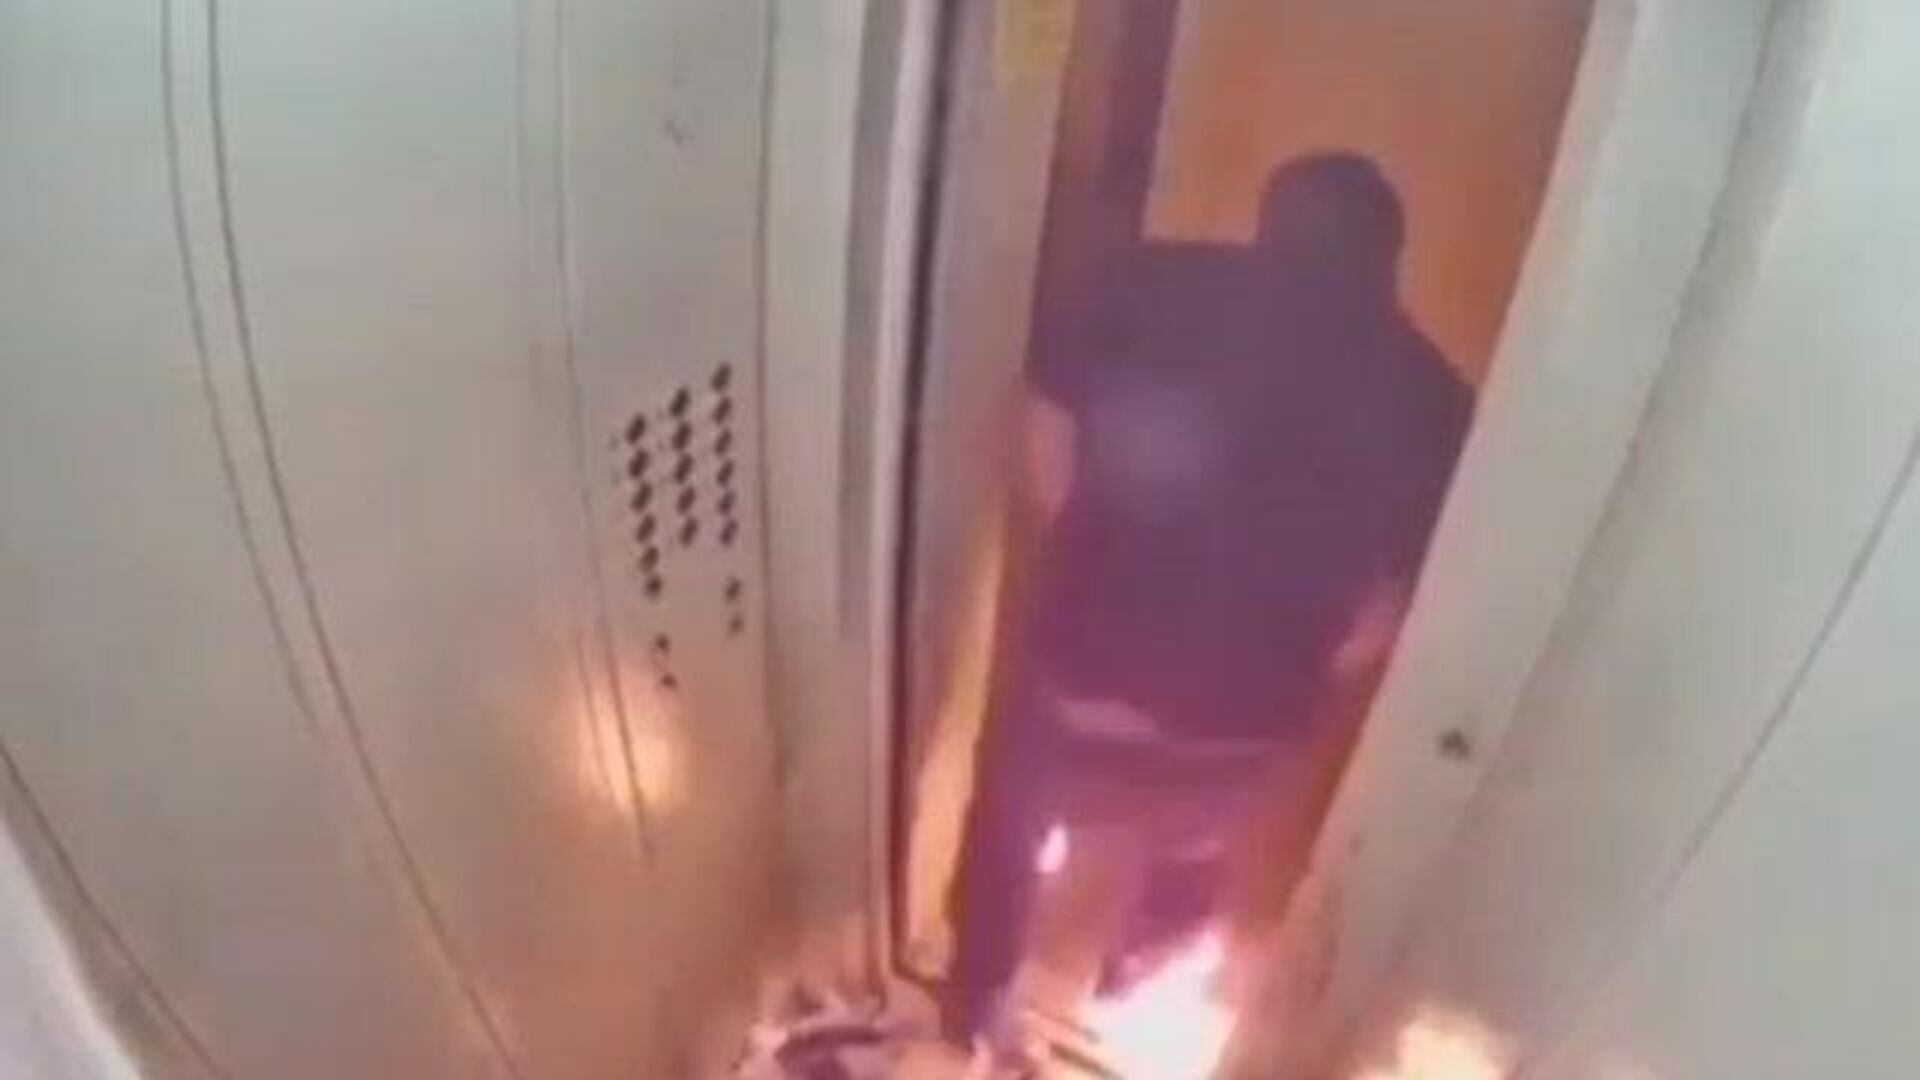 “Перекур в лифте“: житель Оренбурга чуть не сгорел при поджоге воспламеняющейся жидкости - РИА Новости, 1920, 27.11.2020